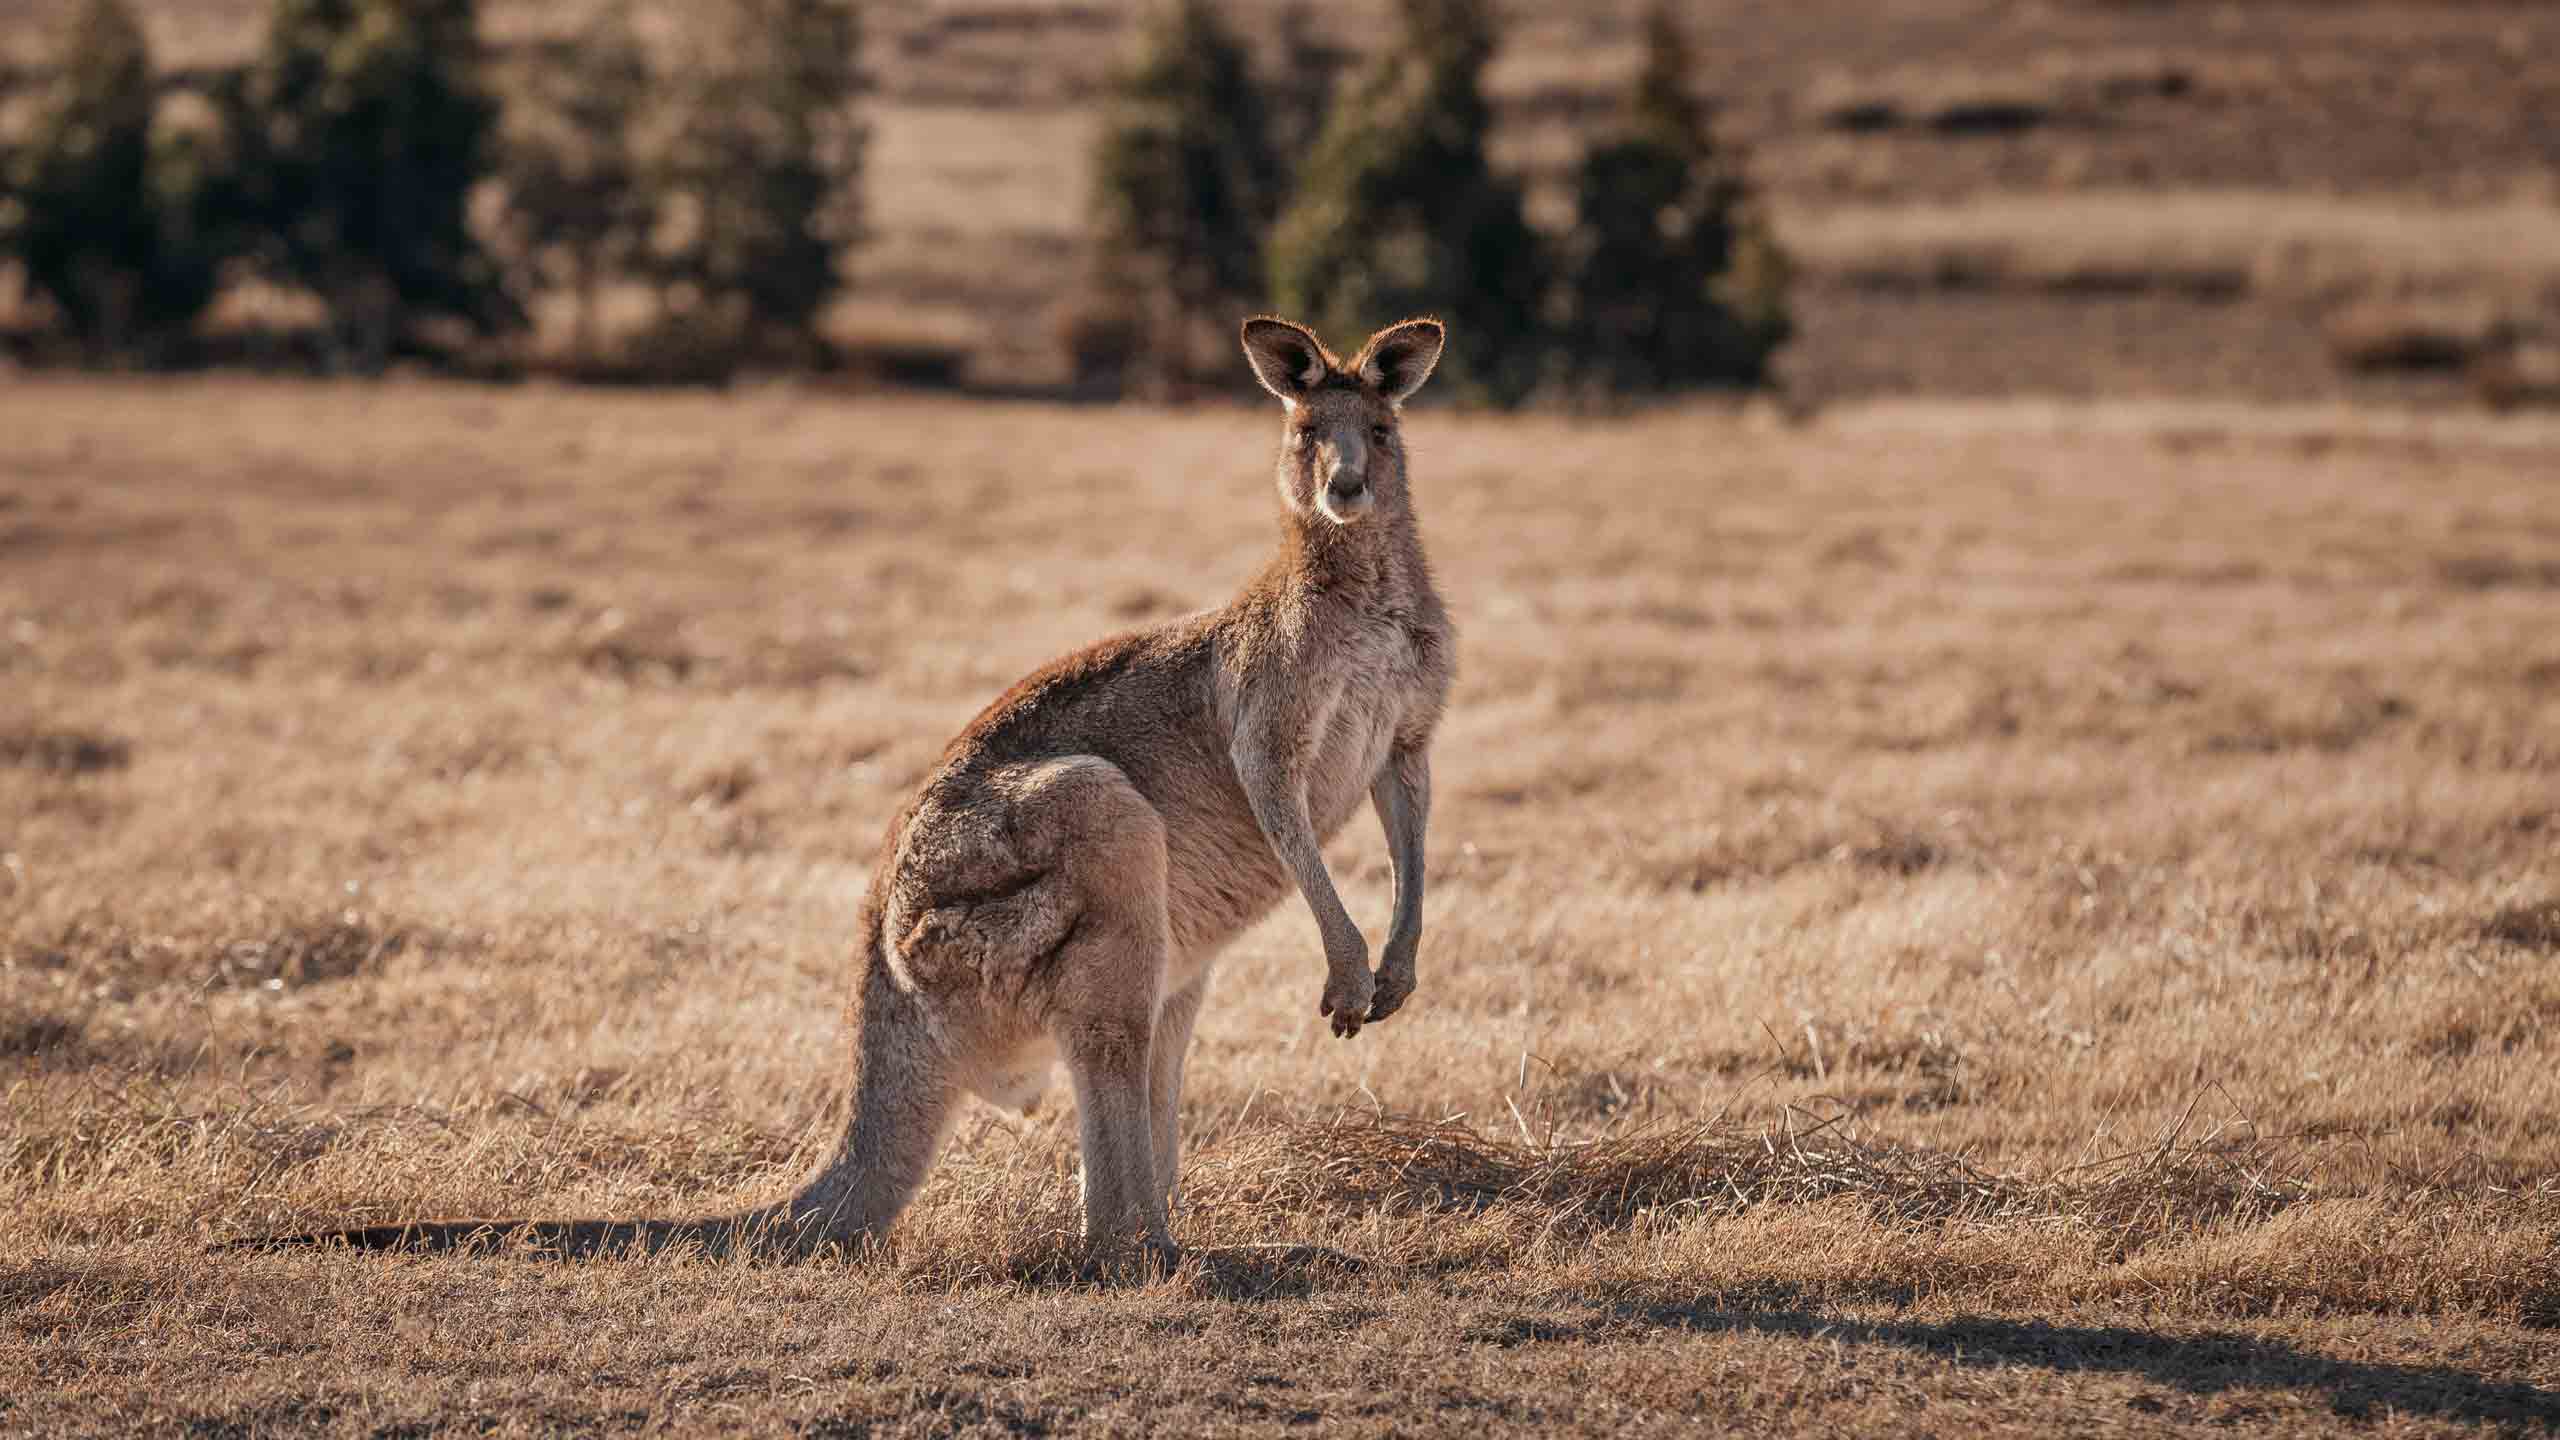 OneAndOnly-WolganValley-bluemountains-australia-kangaroo-wildlife